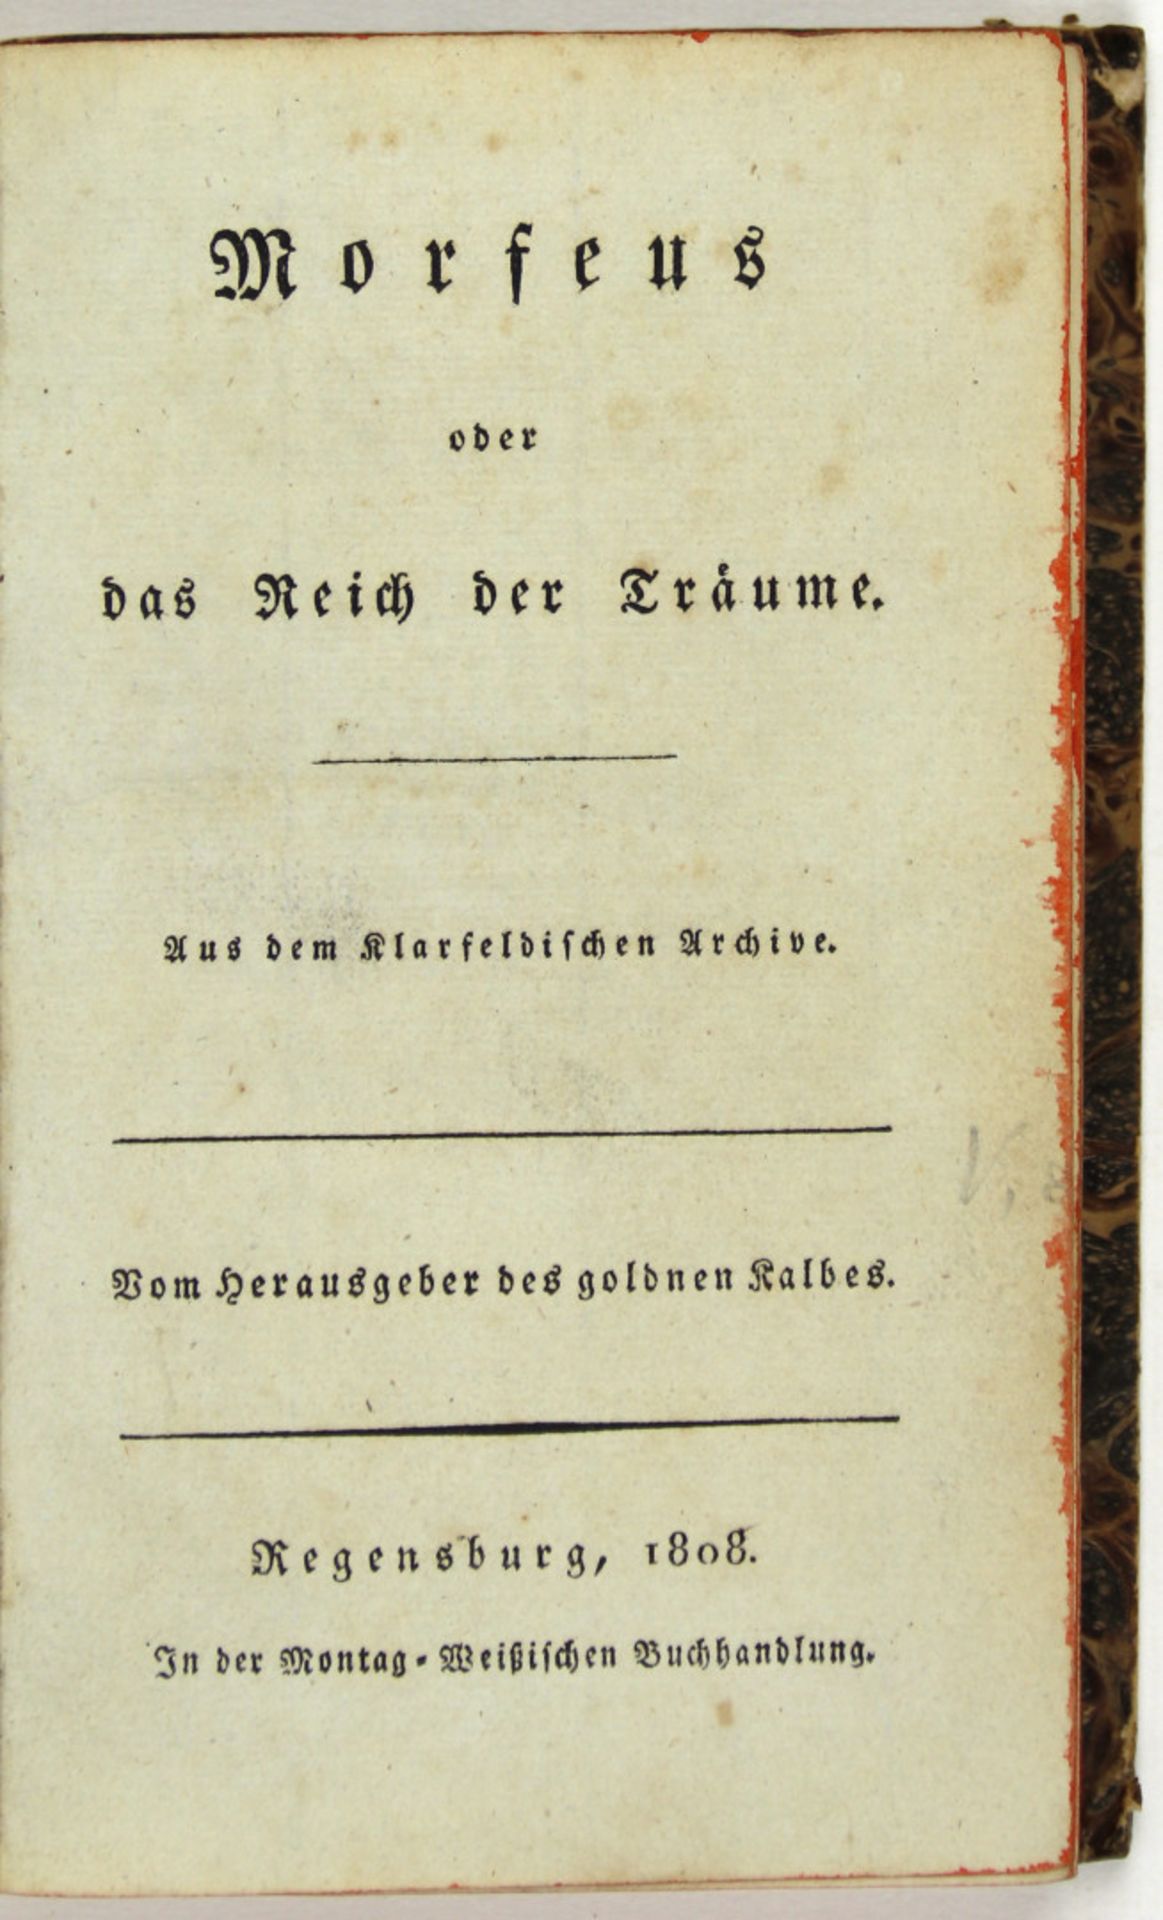 (Bentzel-Sternau, Karl Christian Ernst Graf zu): Morfeus oder das Reich der Träume.